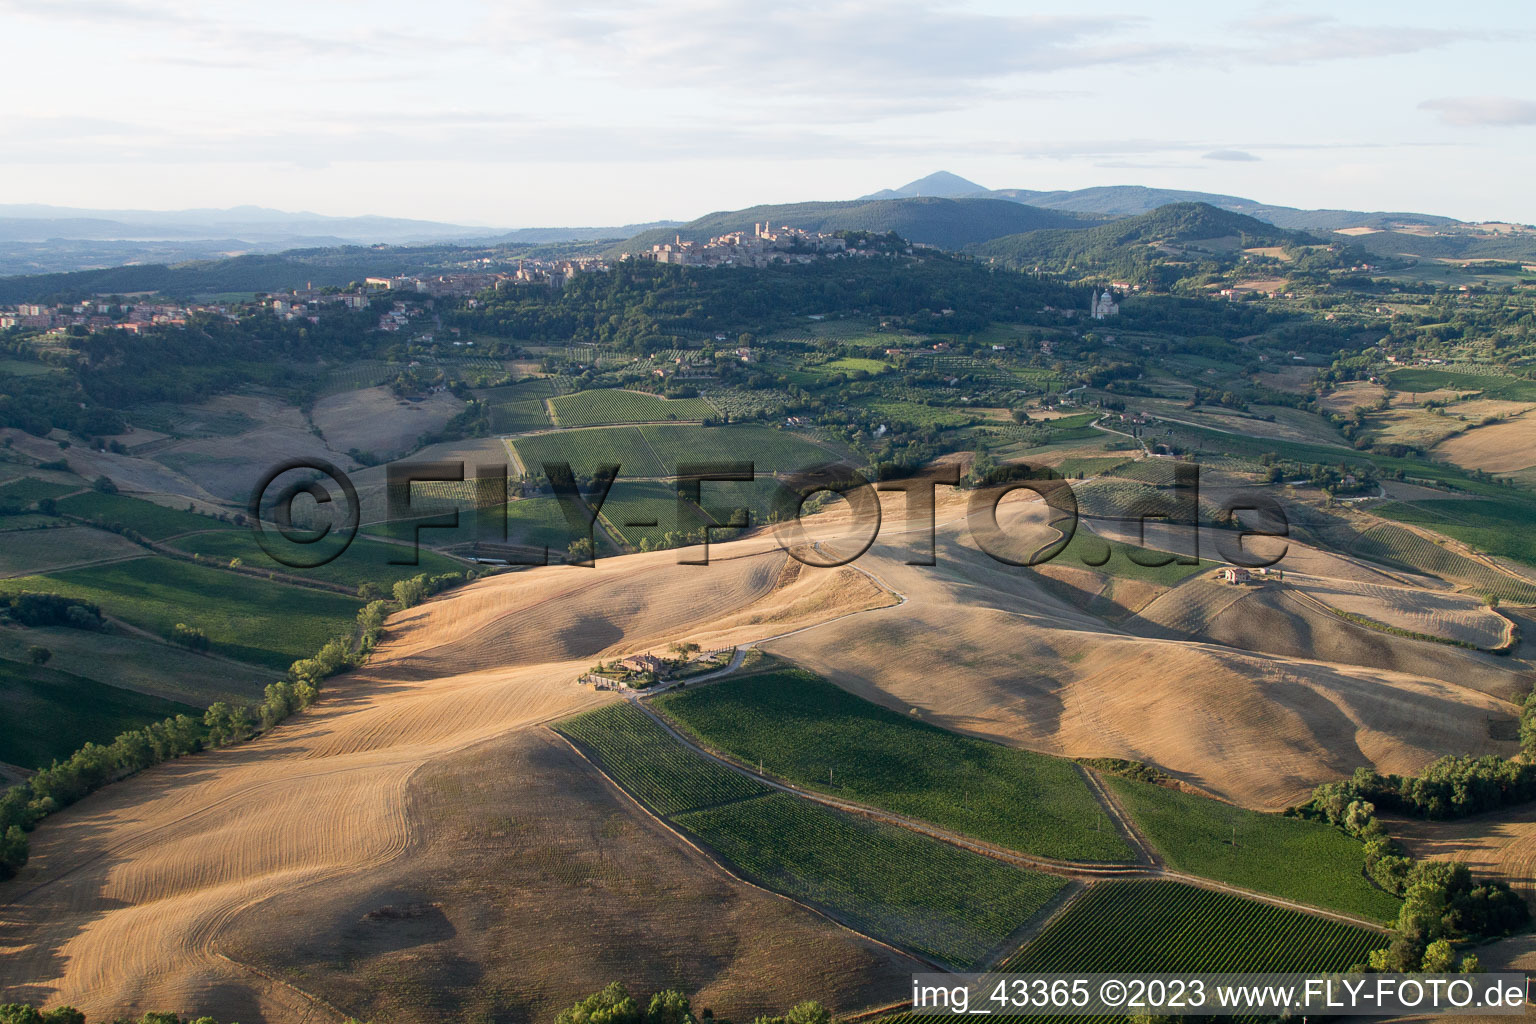 Montefollonico dans le département Toscane, Italie hors des airs